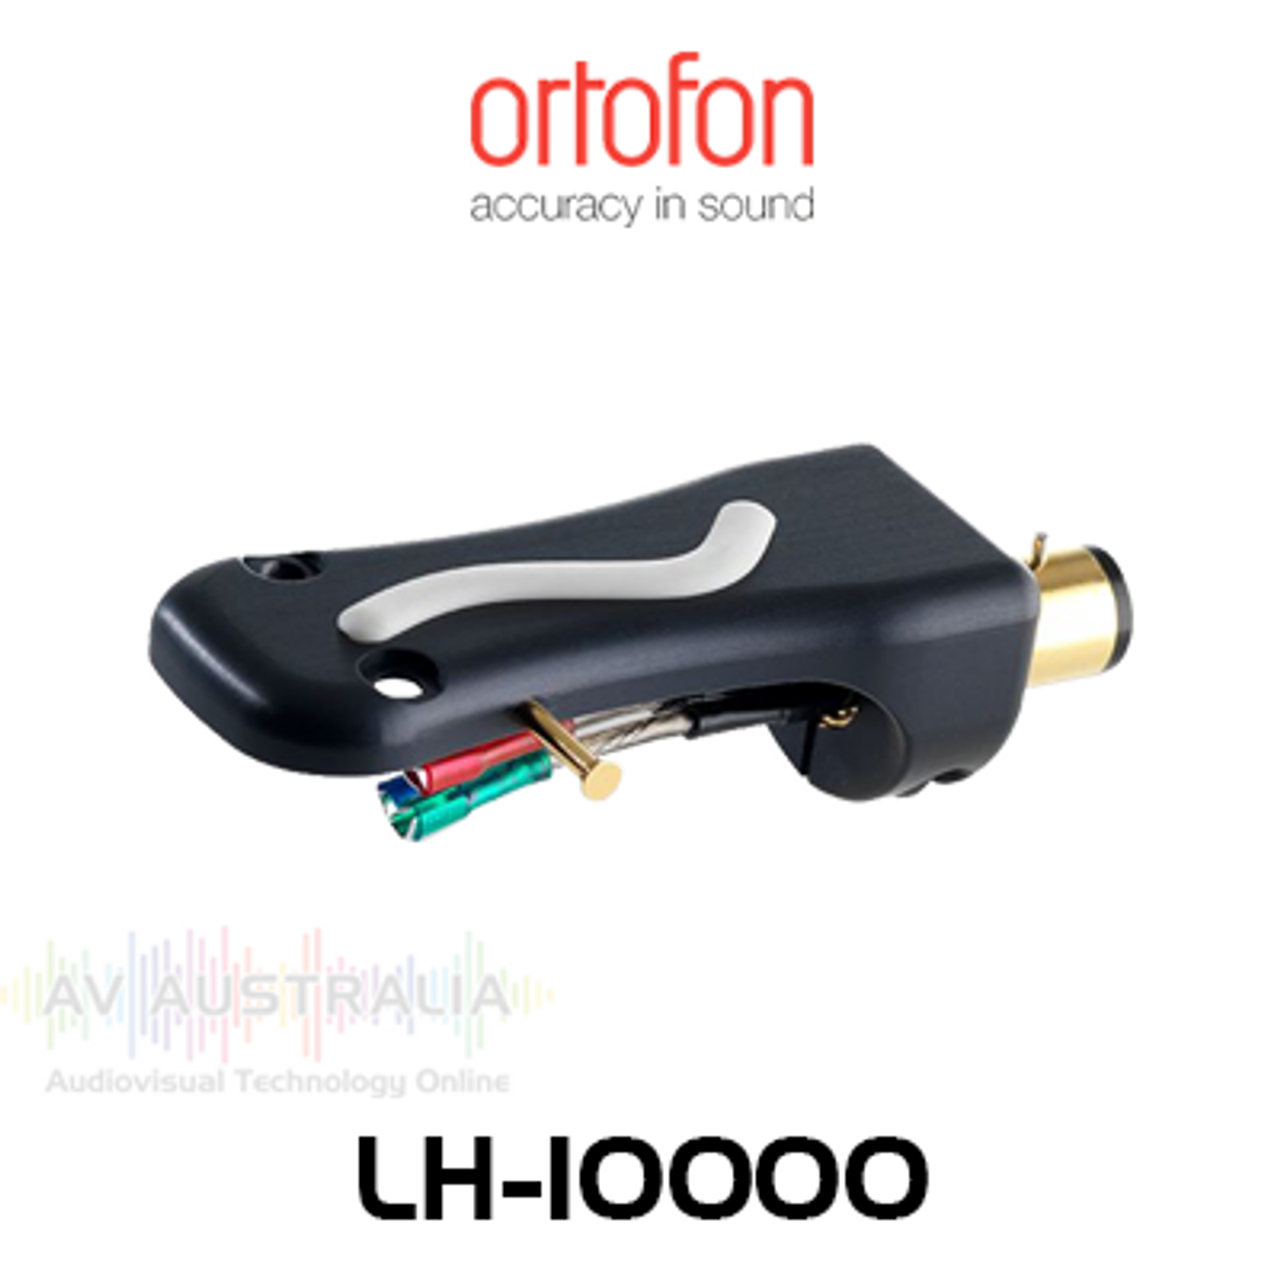 Ortofon LH-10000 Aluminium Alloy Headshell